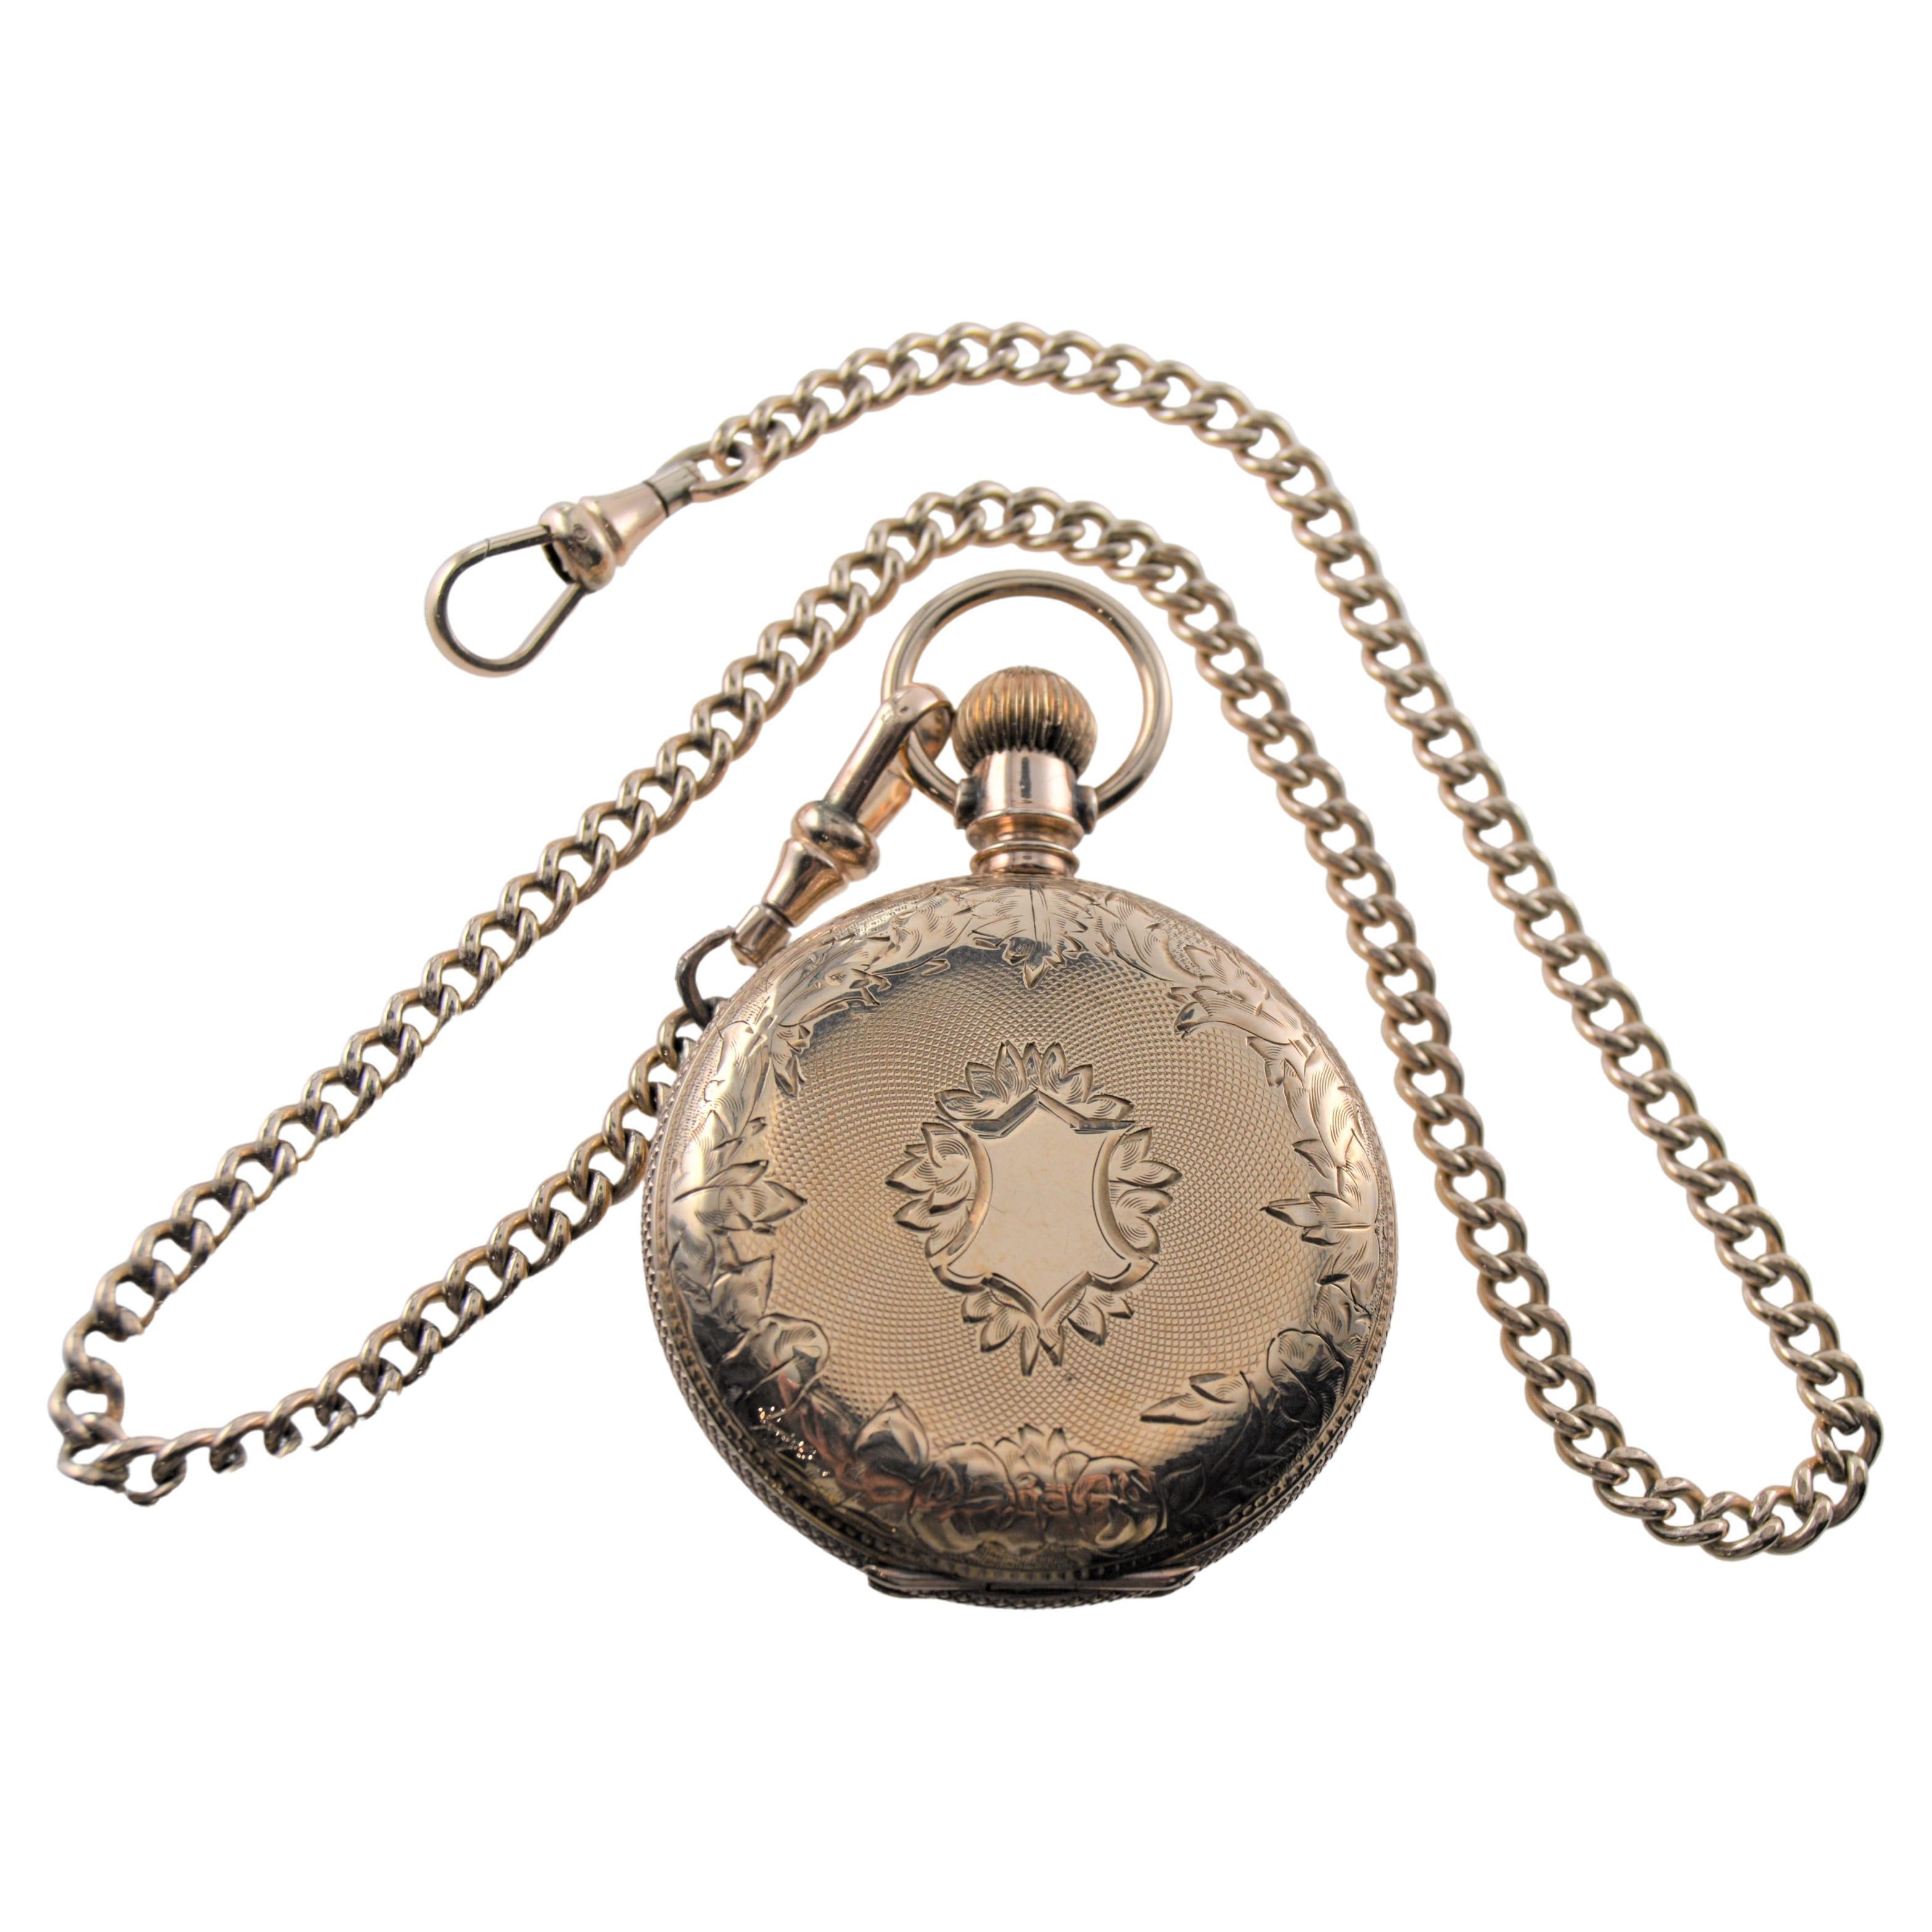 1940's Birks Sterling Silver Locket Necklace, Vintage Hand Engraved Extra  Large Oval Pendant - Celebrating Love